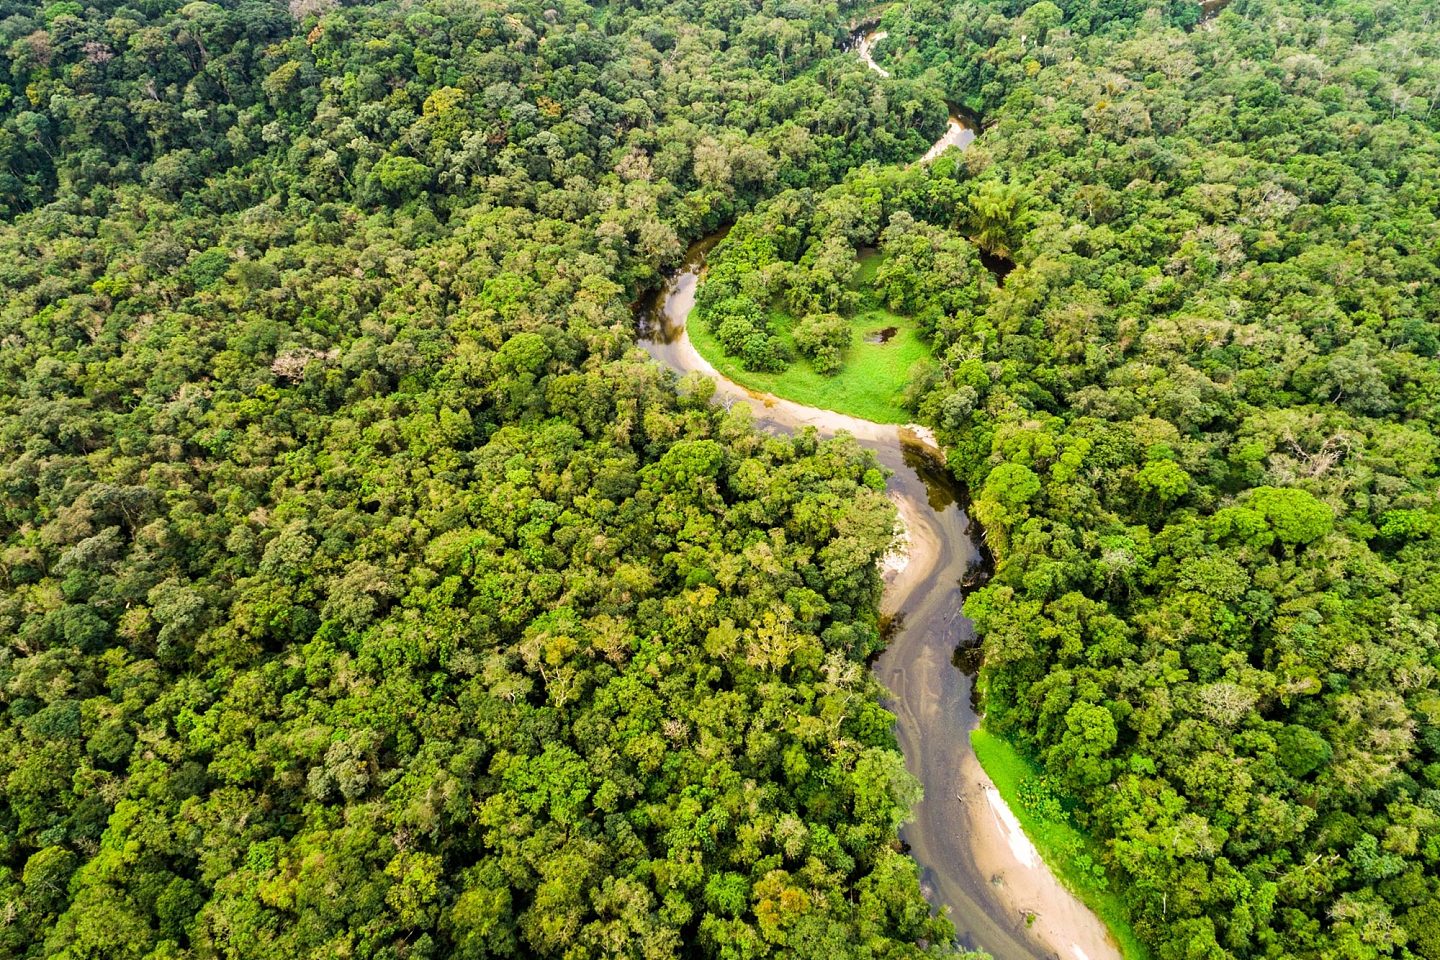 亚马逊地区各国在森林砍伐率和恢复方面存在巨大差异 - 1